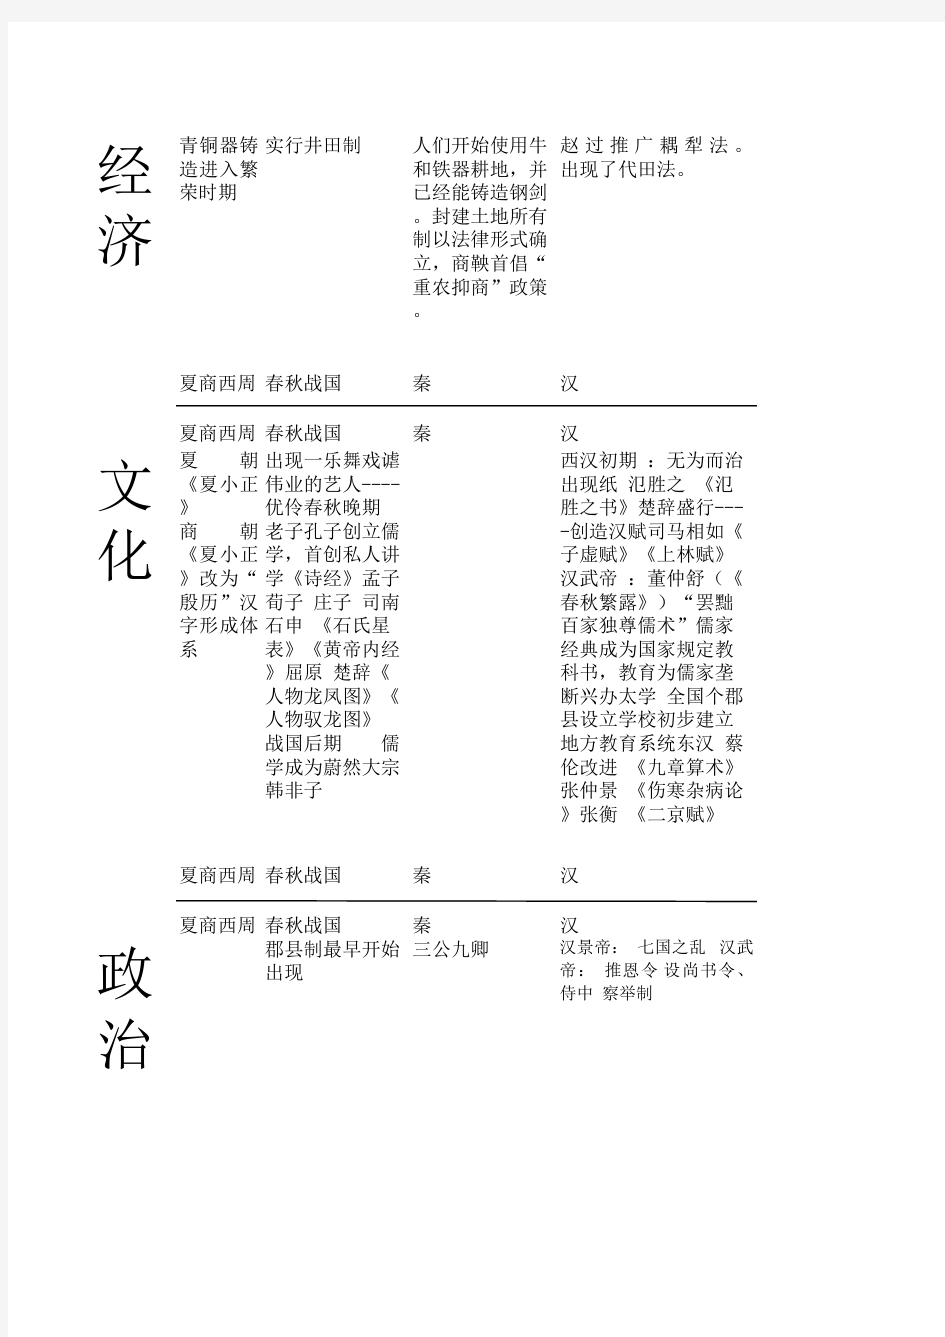 中国历史大事年表(鸦片战争以前)